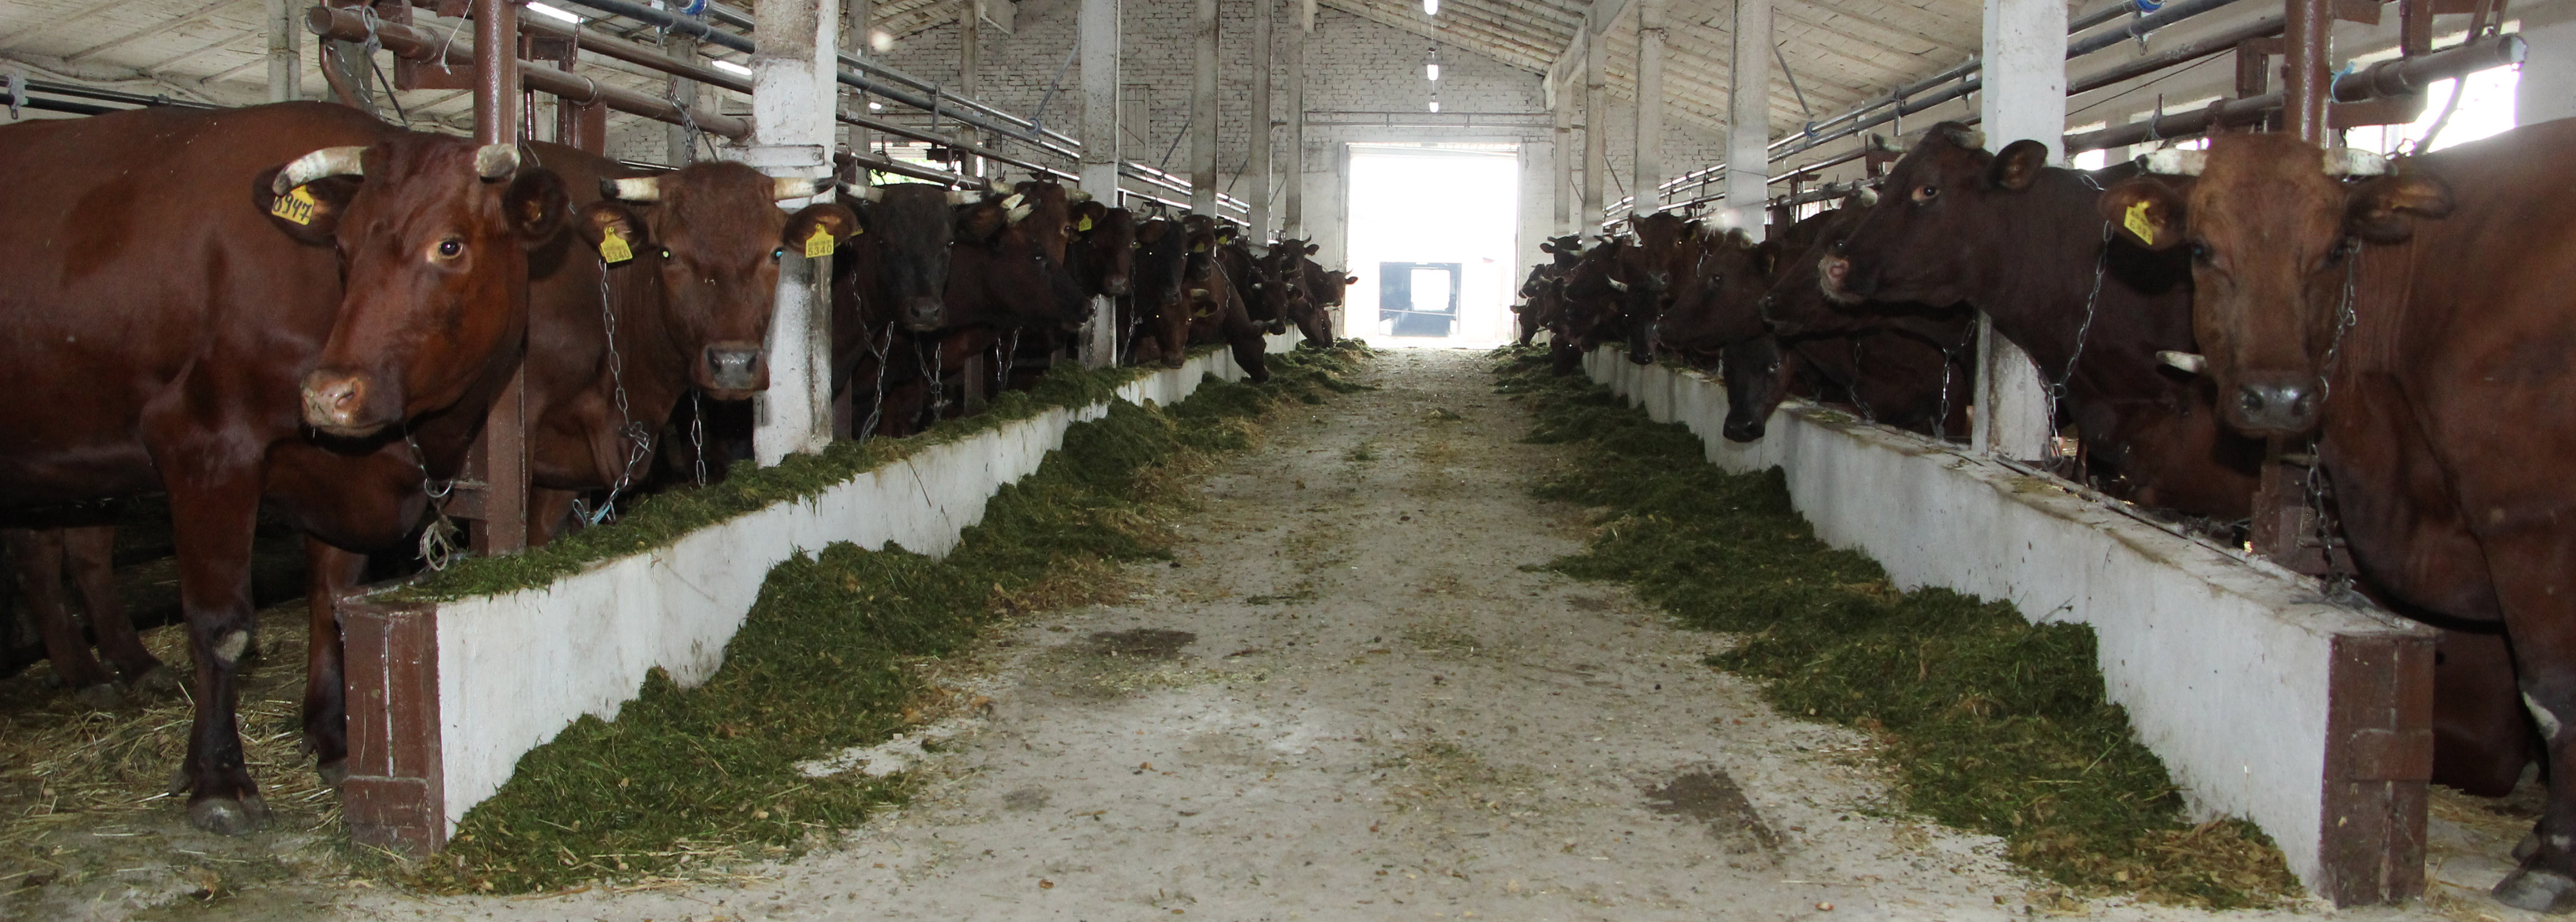 корова коровы животноводство сельское хозяйство ферма панорама